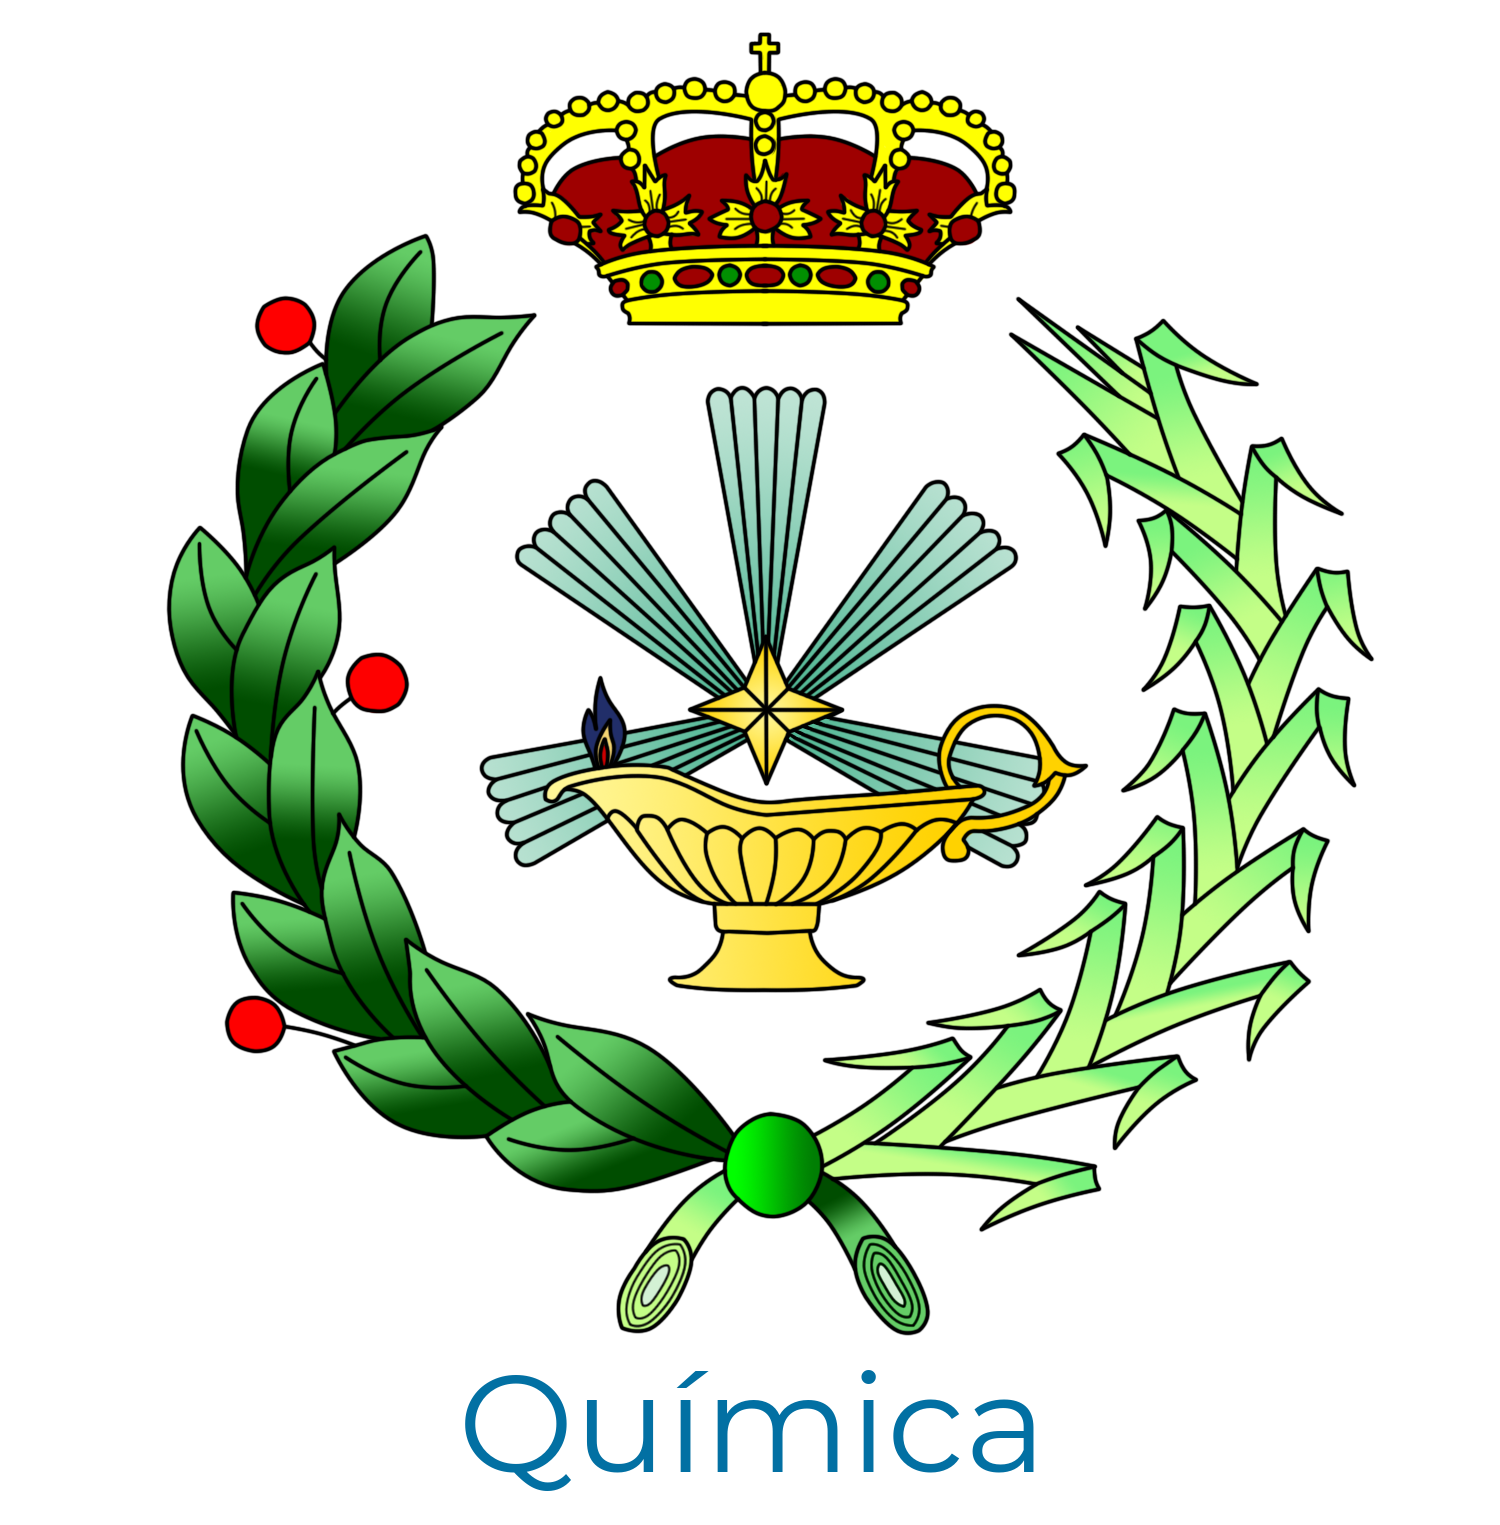 Quimica logo